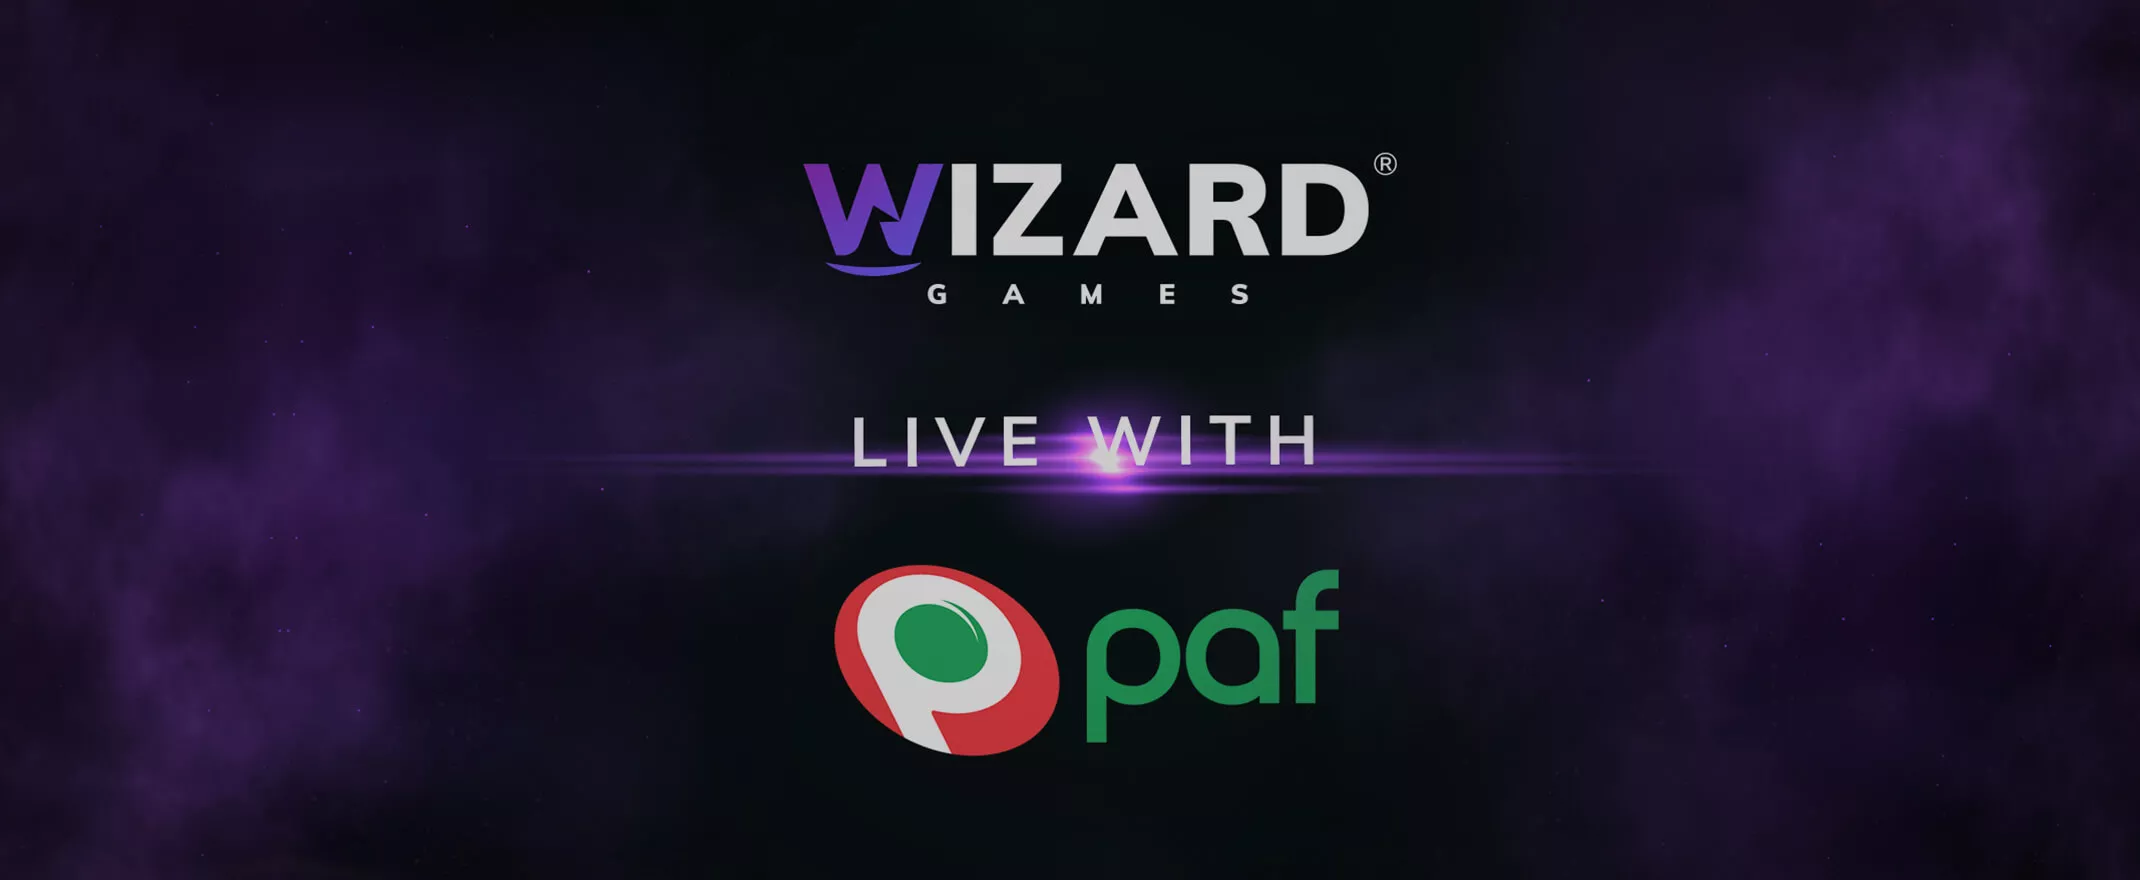 Wizard Games spelportfölj nu tillgänglig hos Paf